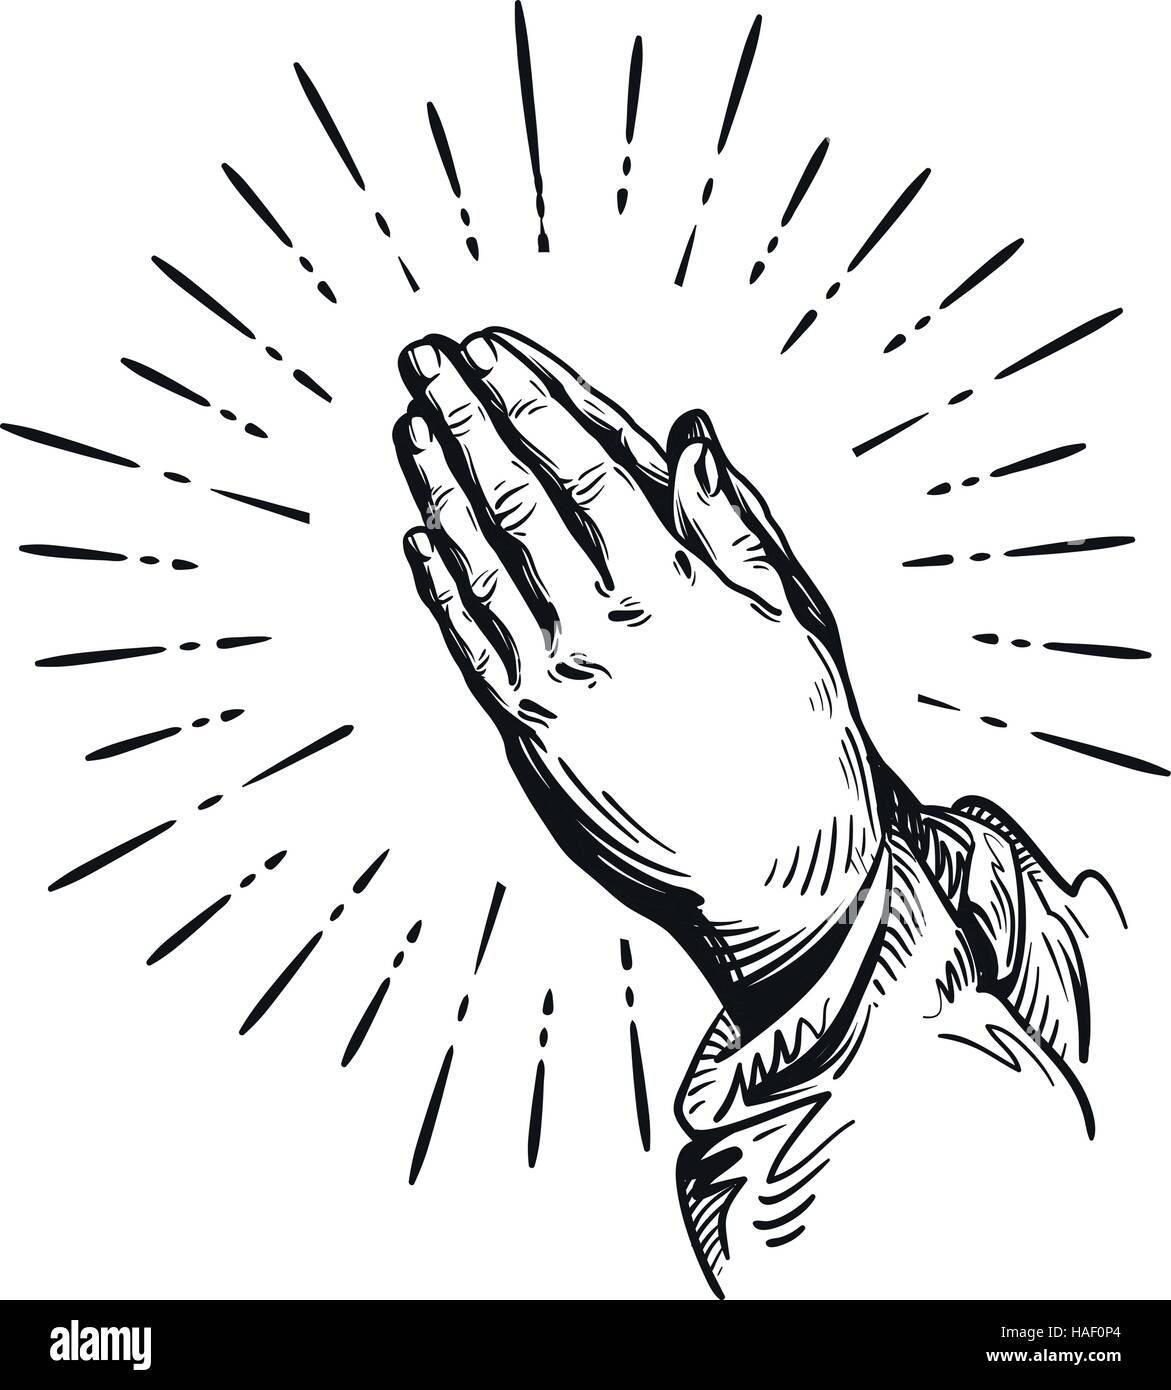 Gebet. Skizze, die Hände zu beten. Vektor-Illustration isoliert auf weißem Hintergrund Stock Vektor